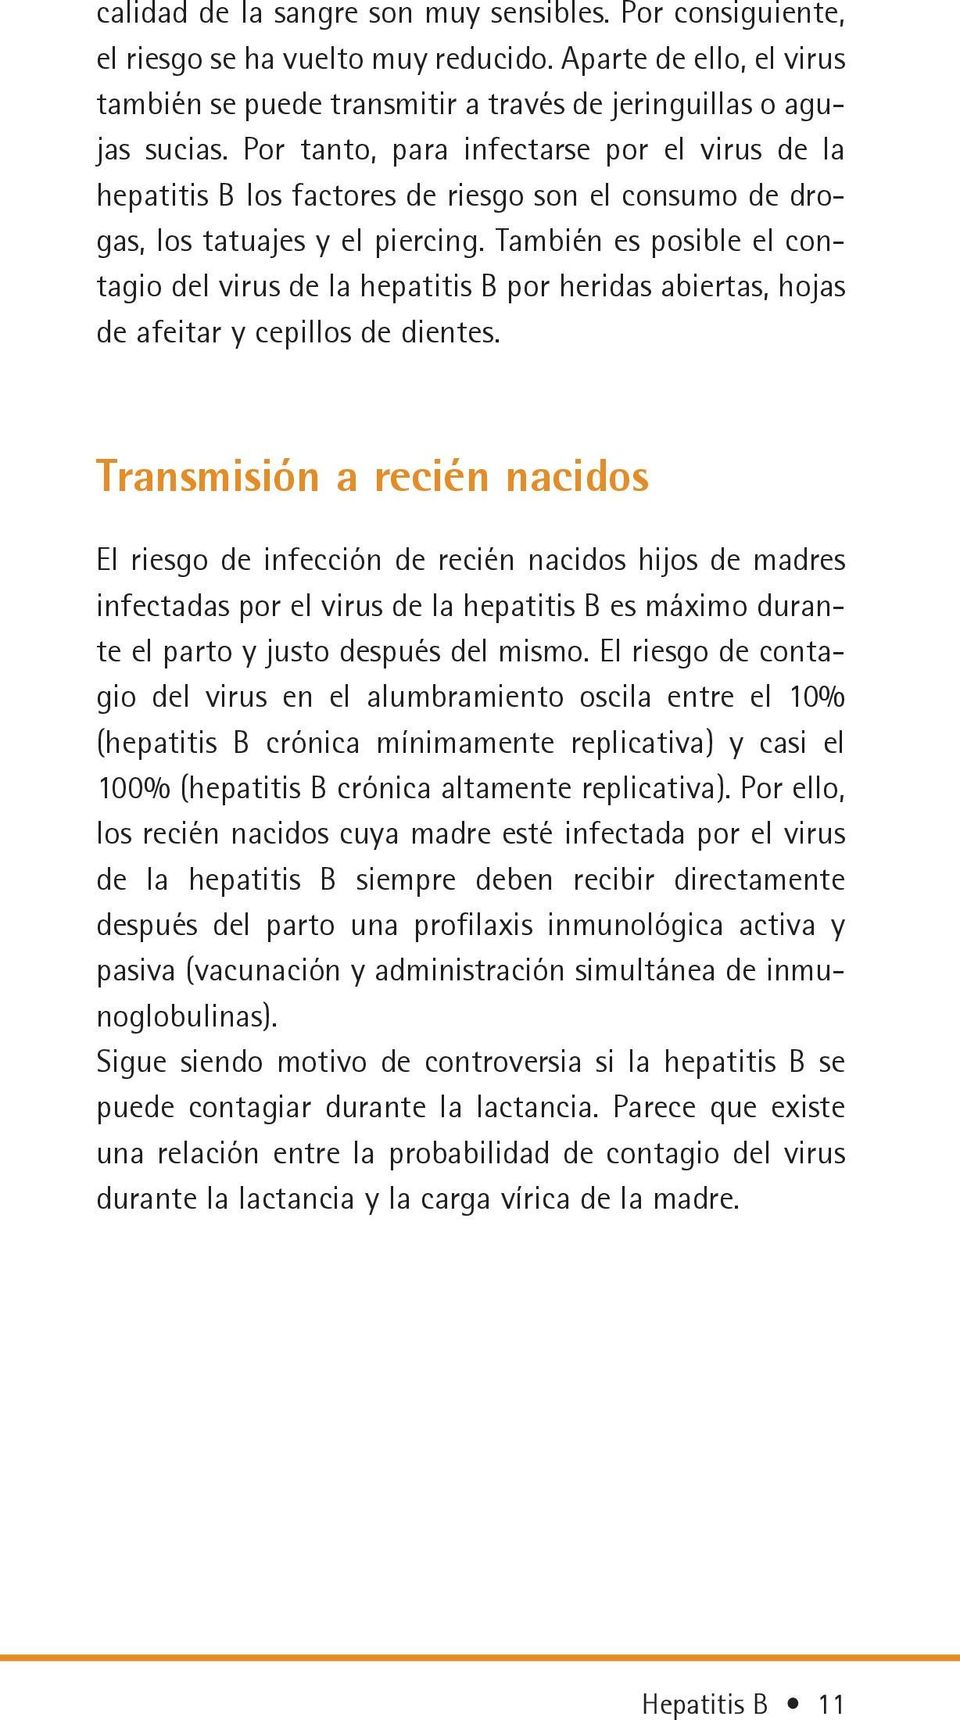 También es posible el contagio del virus de la hepatitis B por heridas abiertas, hojas de afeitar y cepillos de dientes.